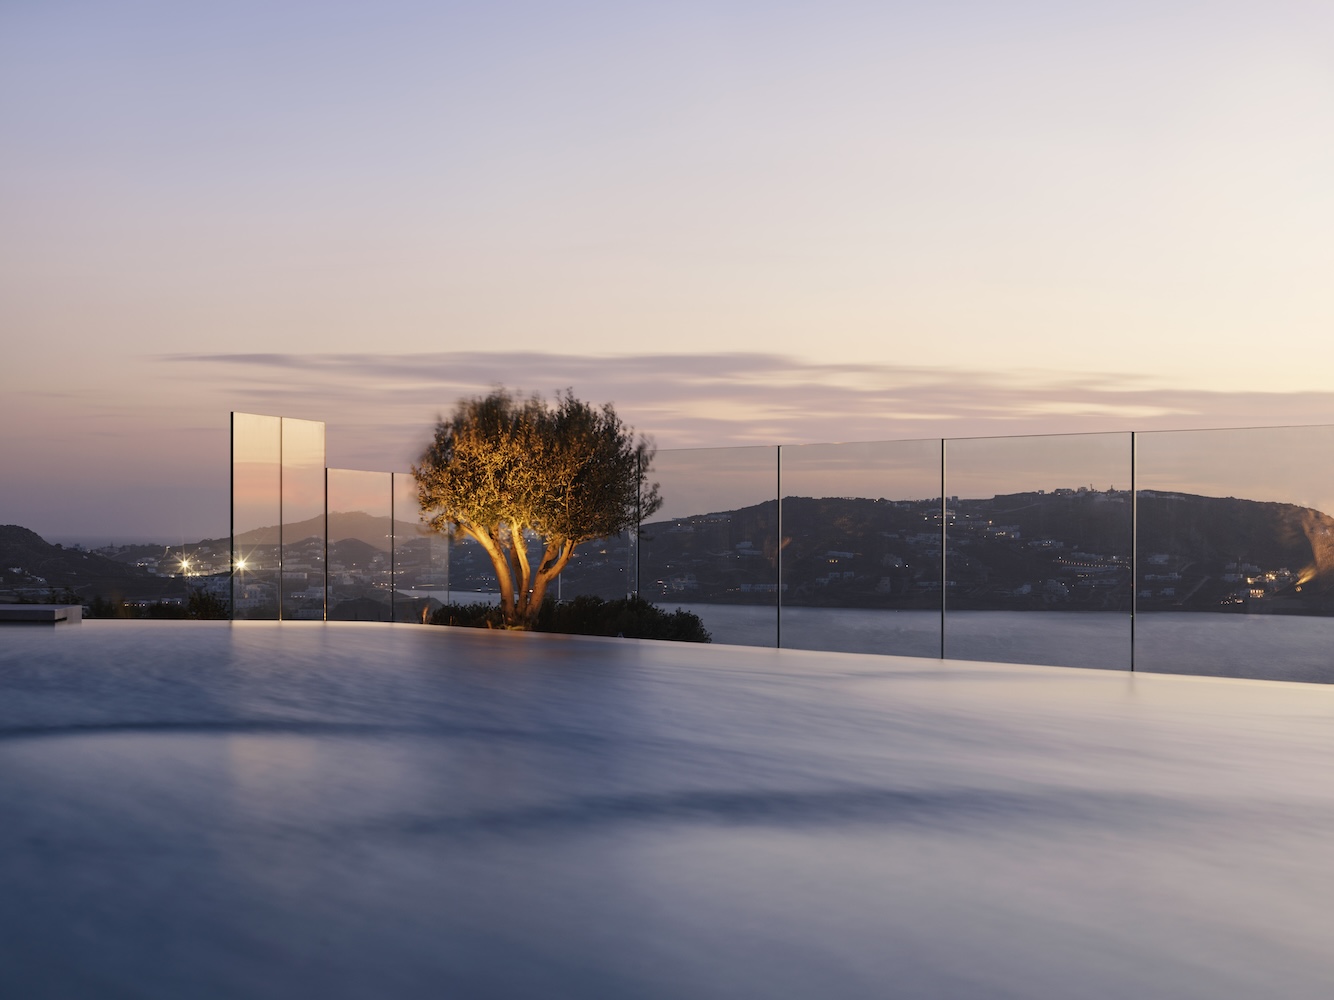 Swimming pool overlooking Aegean Sea in Greece